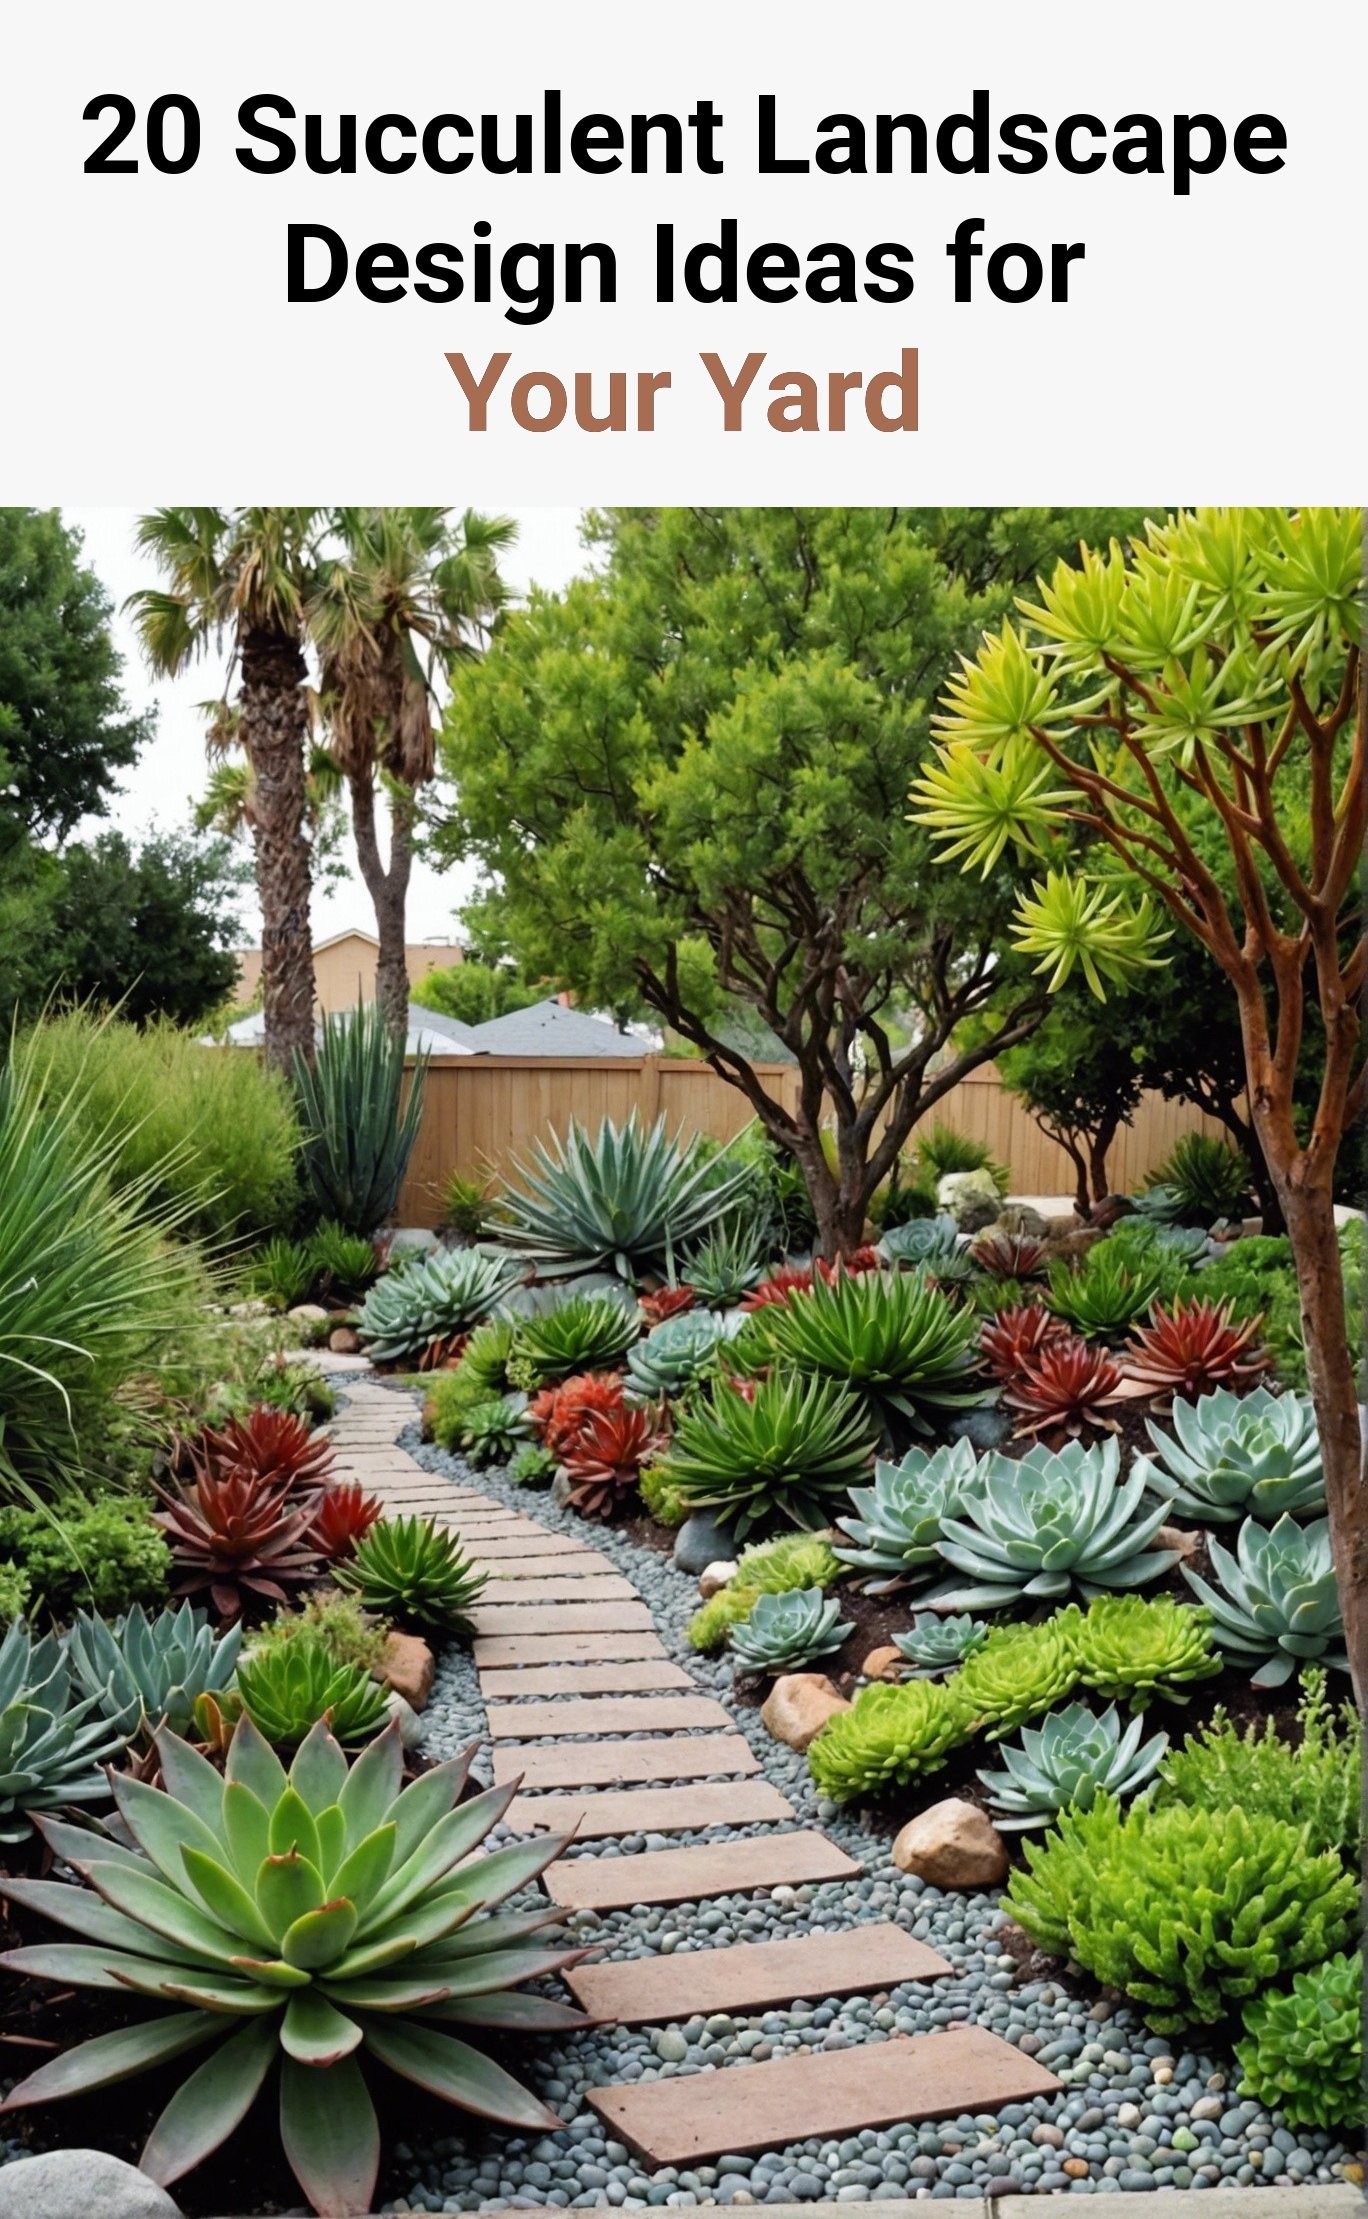 20 Succulent Landscape Design Ideas for Your Yard